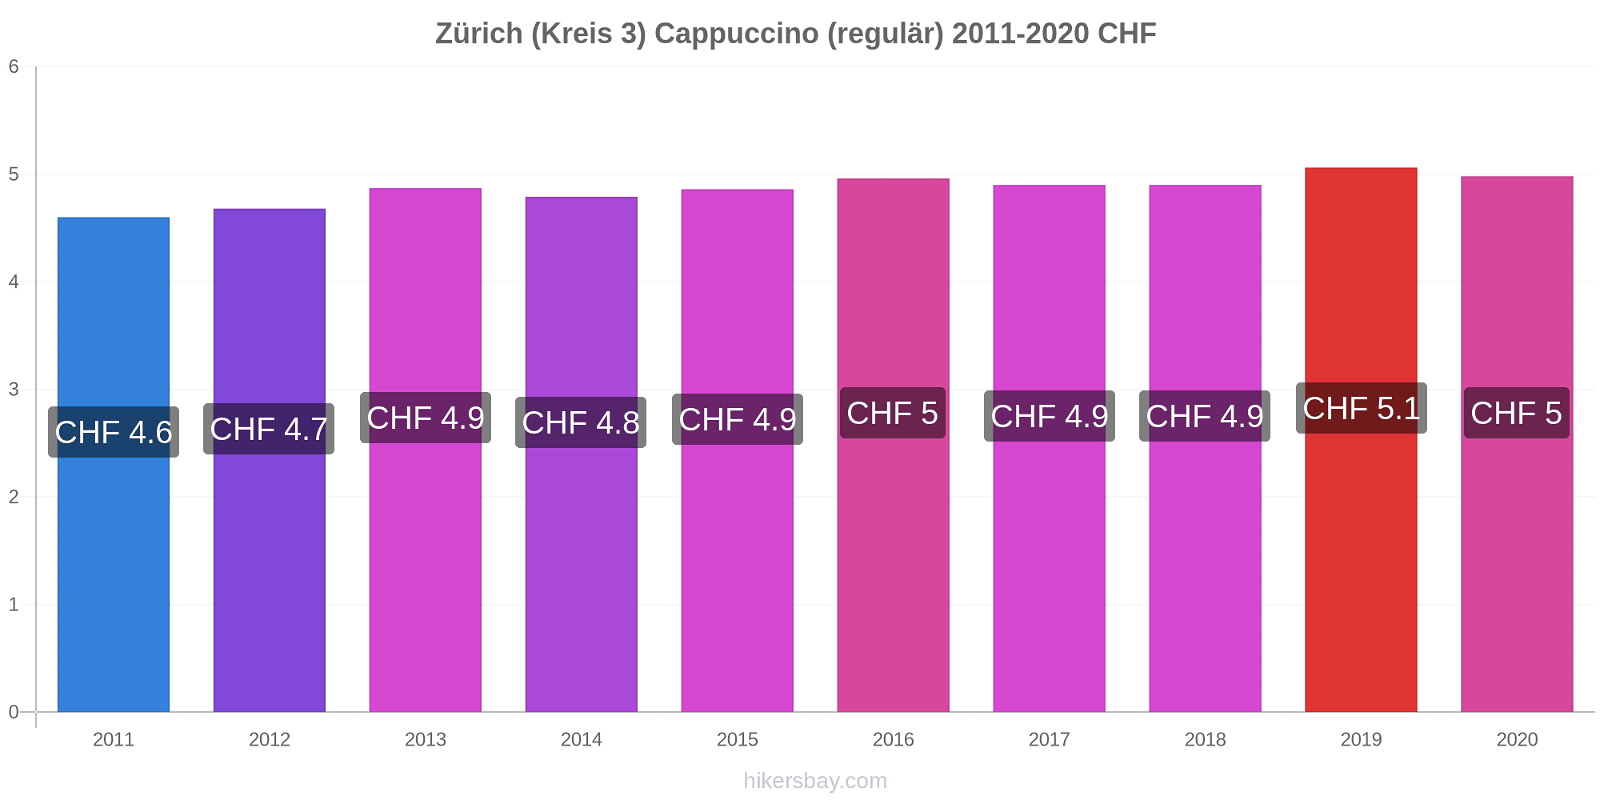 Zürich (Kreis 3) Preisänderungen Cappuccino (regulär) hikersbay.com